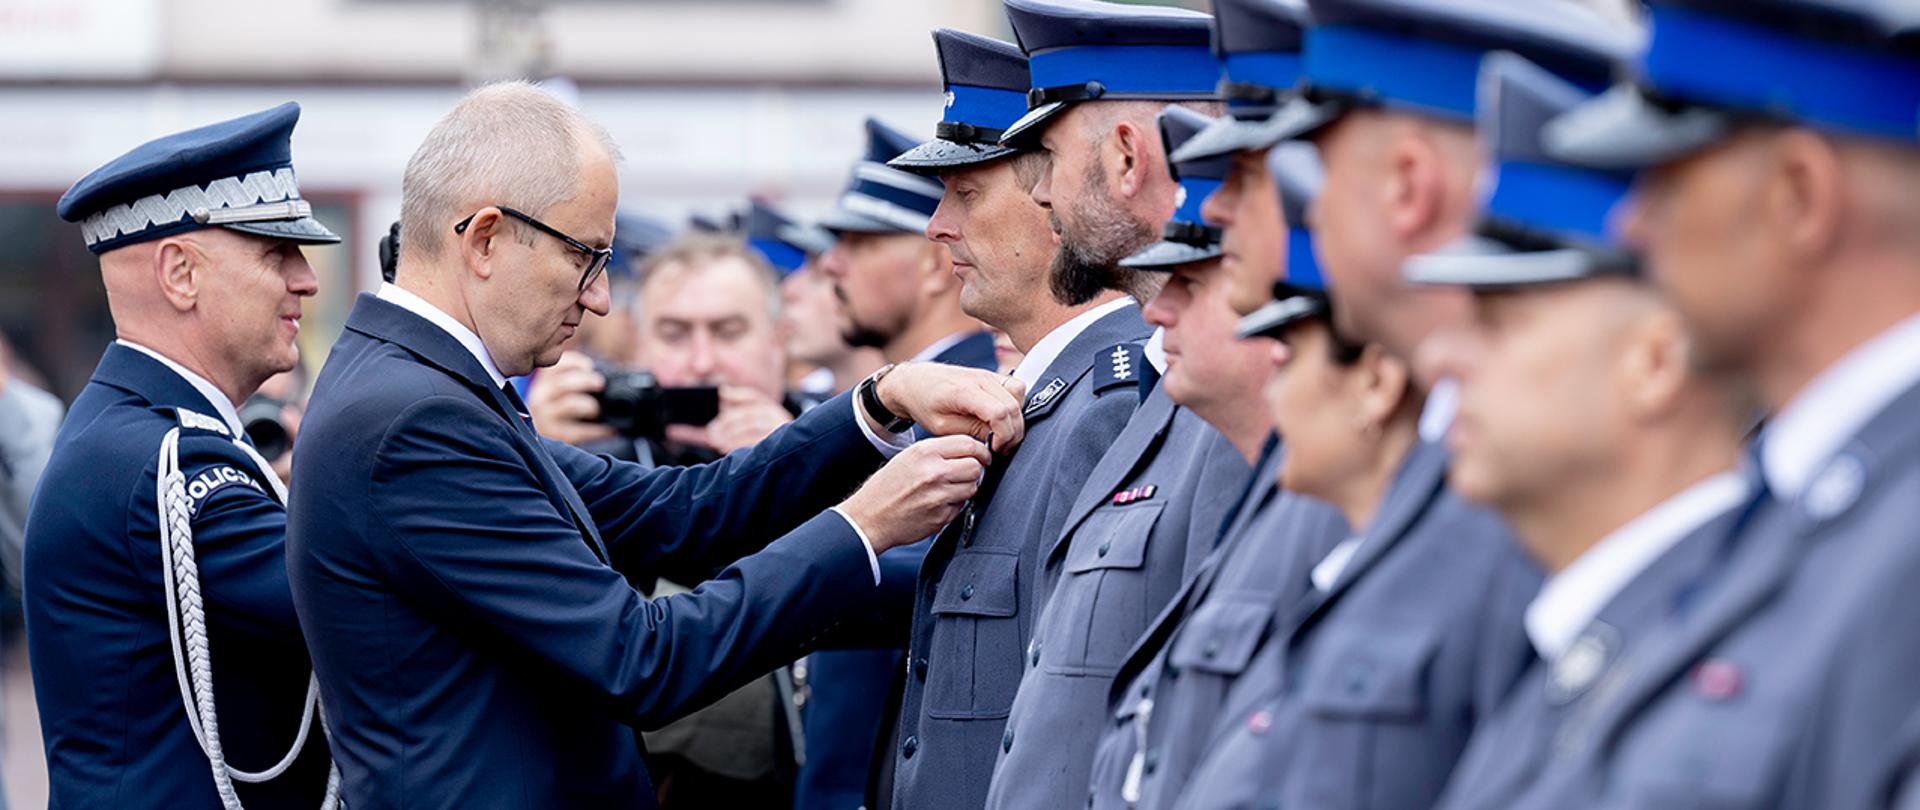 Wiceminister Błażej Poboży wpinający odznaczenie policjantowi podczas Święta Policji w Nowym Mieście Lubawskim.